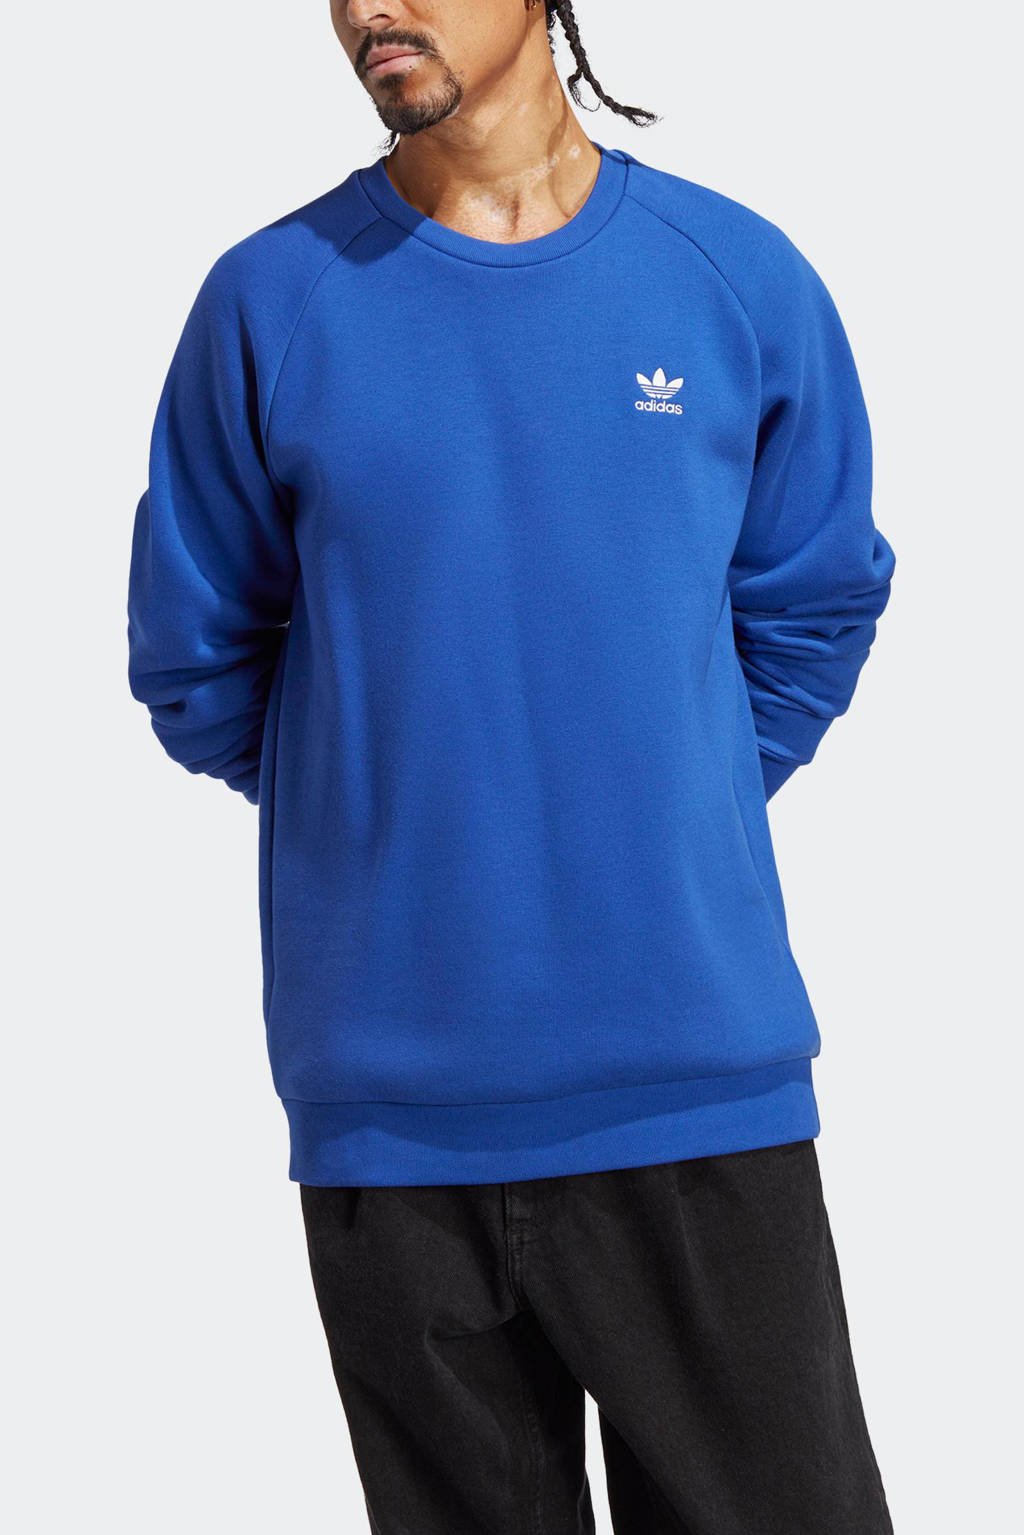 Gorgelen uitdrukken gek adidas Originals sweater blauw | wehkamp